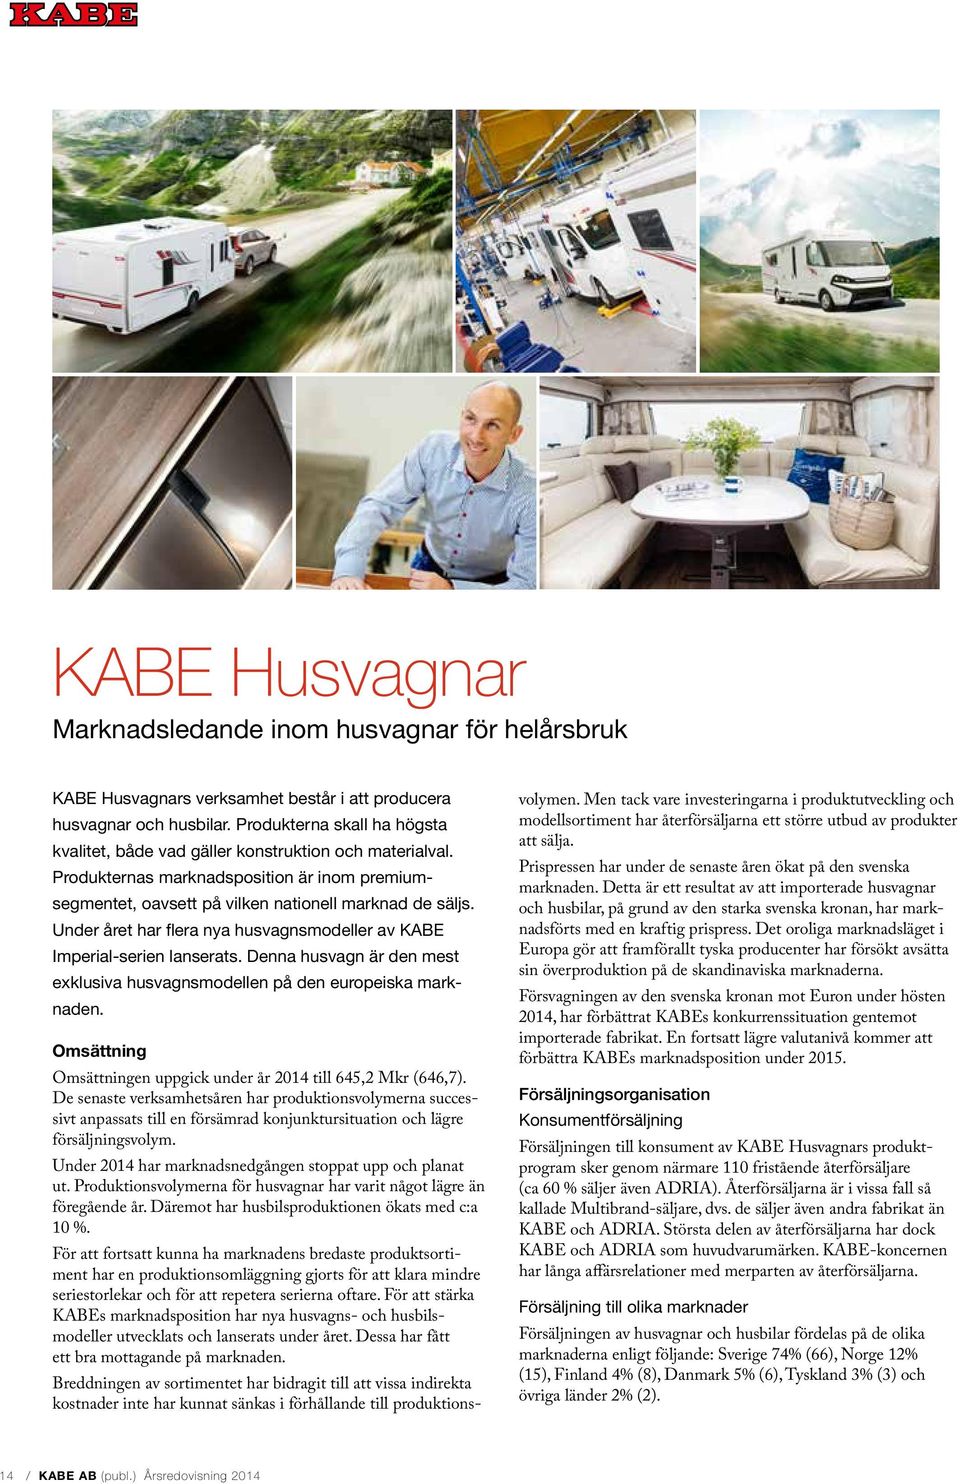 Under året har flera nya husvagnsmodeller av KABE Imperial-serien lanserats. Denna husvagn är den mest exklusiva husvagnsmodellen på den europeiska marknaden.